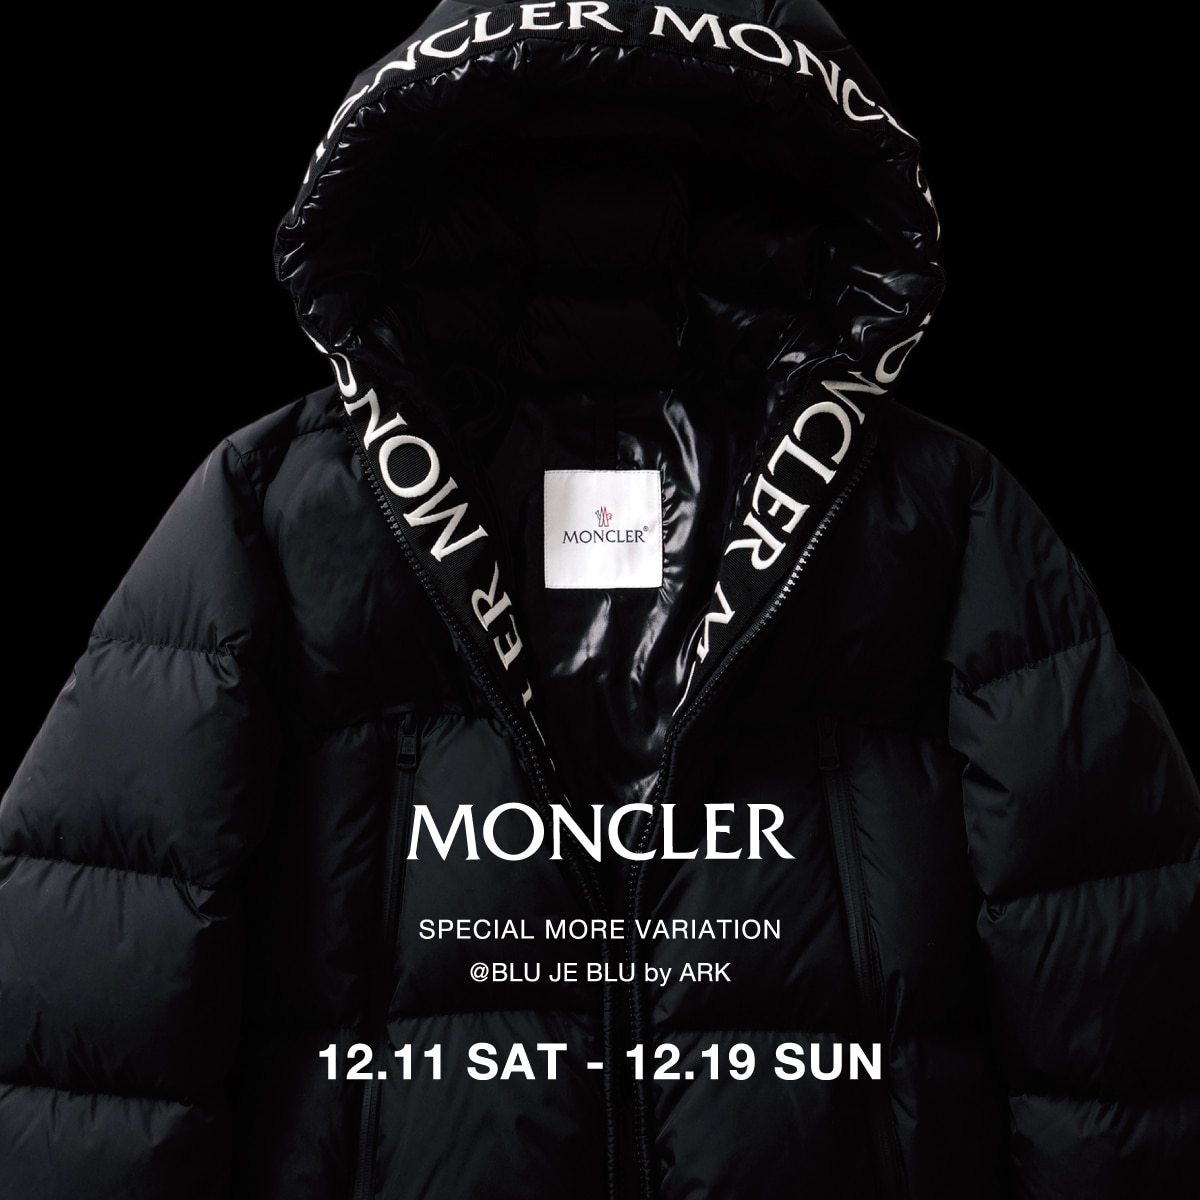 《 MONCLER 》スペシャルモアバリエーション開催のお知らせ